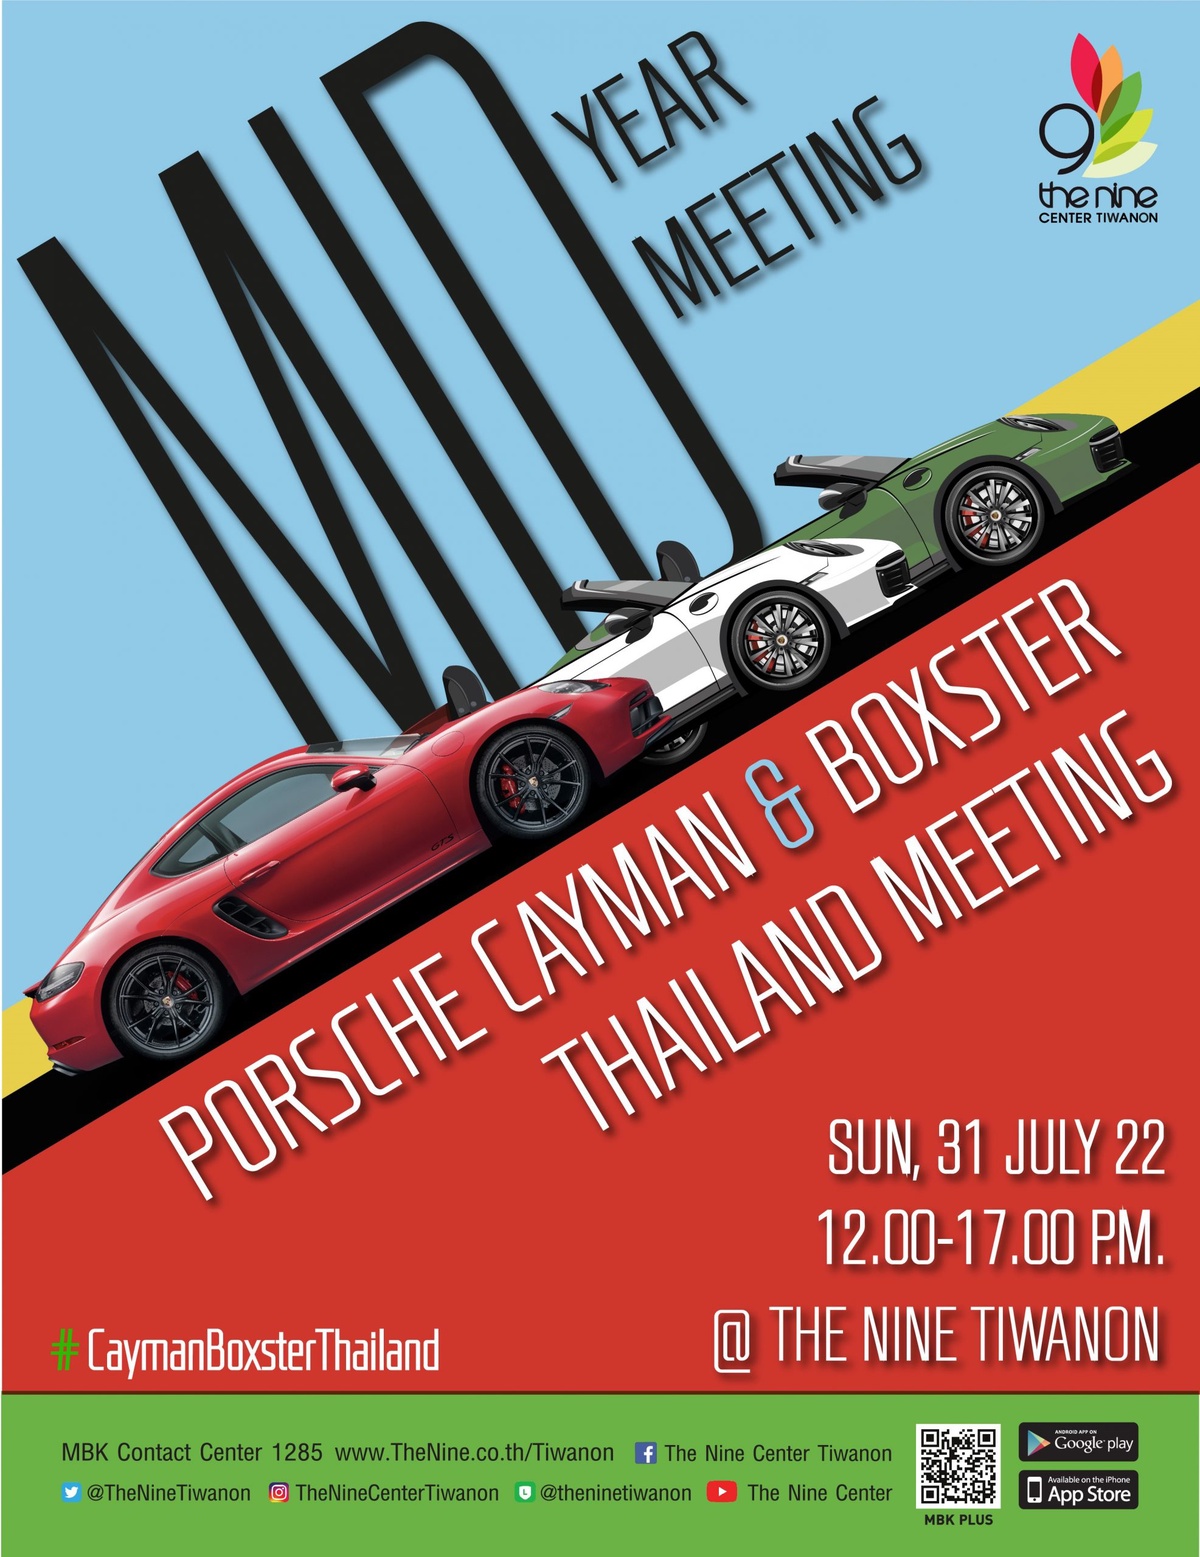 เดอะไนน์ เซ็นเตอร์ ติวานนท์ เปิดพื้นที่เพื่อคนรักเจ้าชายกบทรงพลัง Porsche Cayman Boxster Thailand Meeting ครั้งใหญ่ในย่านปทุมธานี